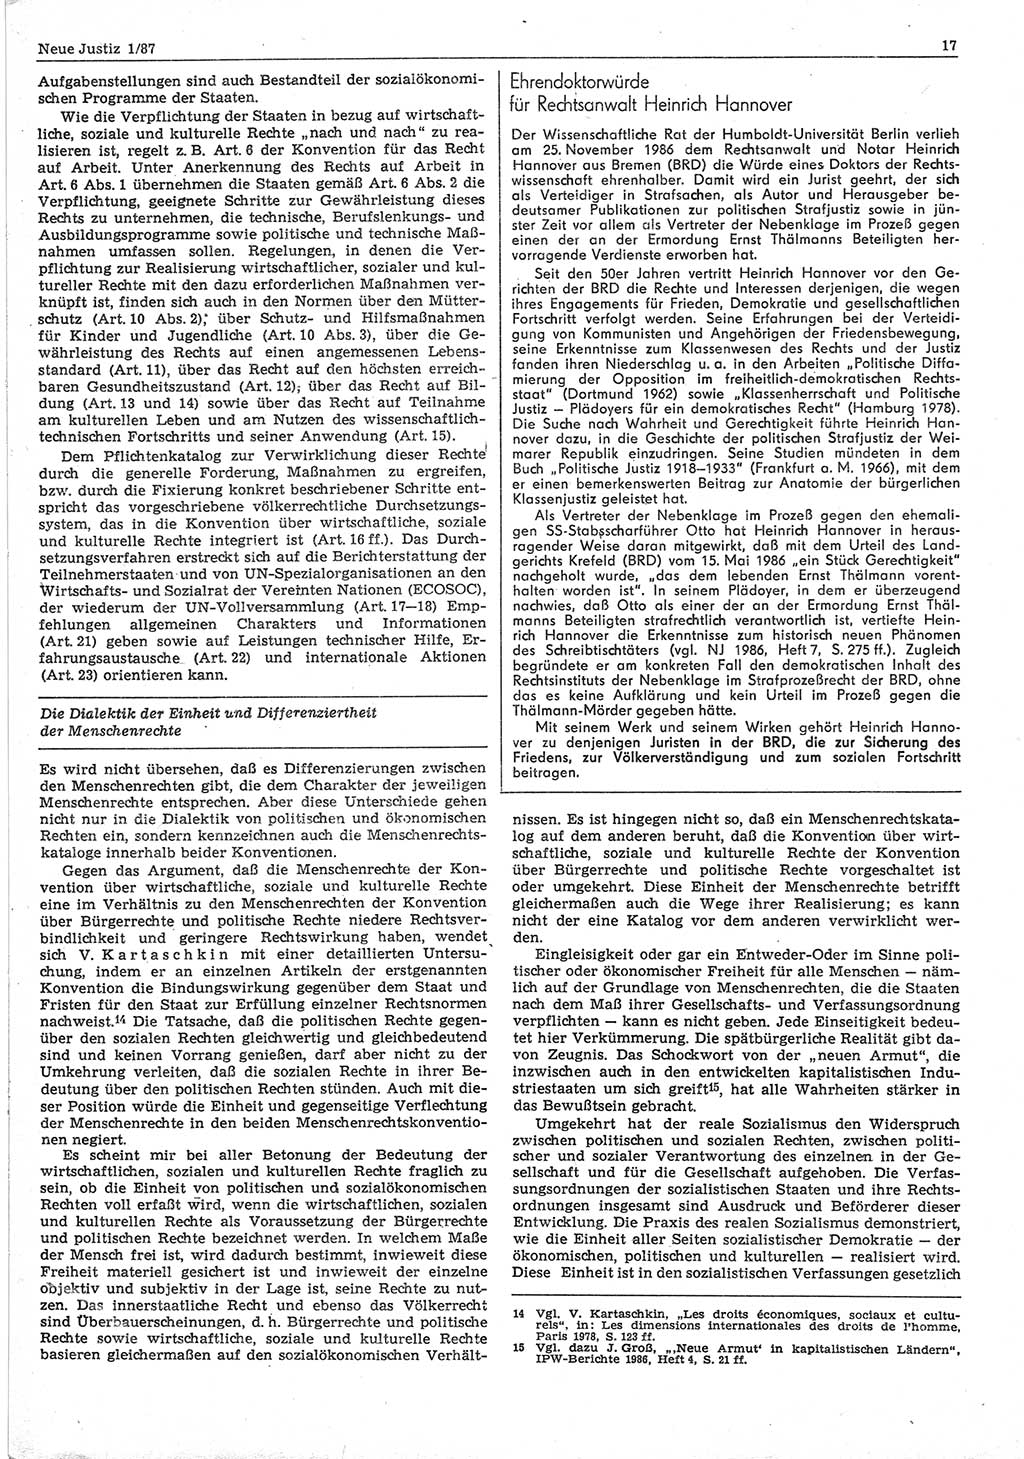 Neue Justiz (NJ), Zeitschrift für sozialistisches Recht und Gesetzlichkeit [Deutsche Demokratische Republik (DDR)], 41. Jahrgang 1987, Seite 17 (NJ DDR 1987, S. 17)